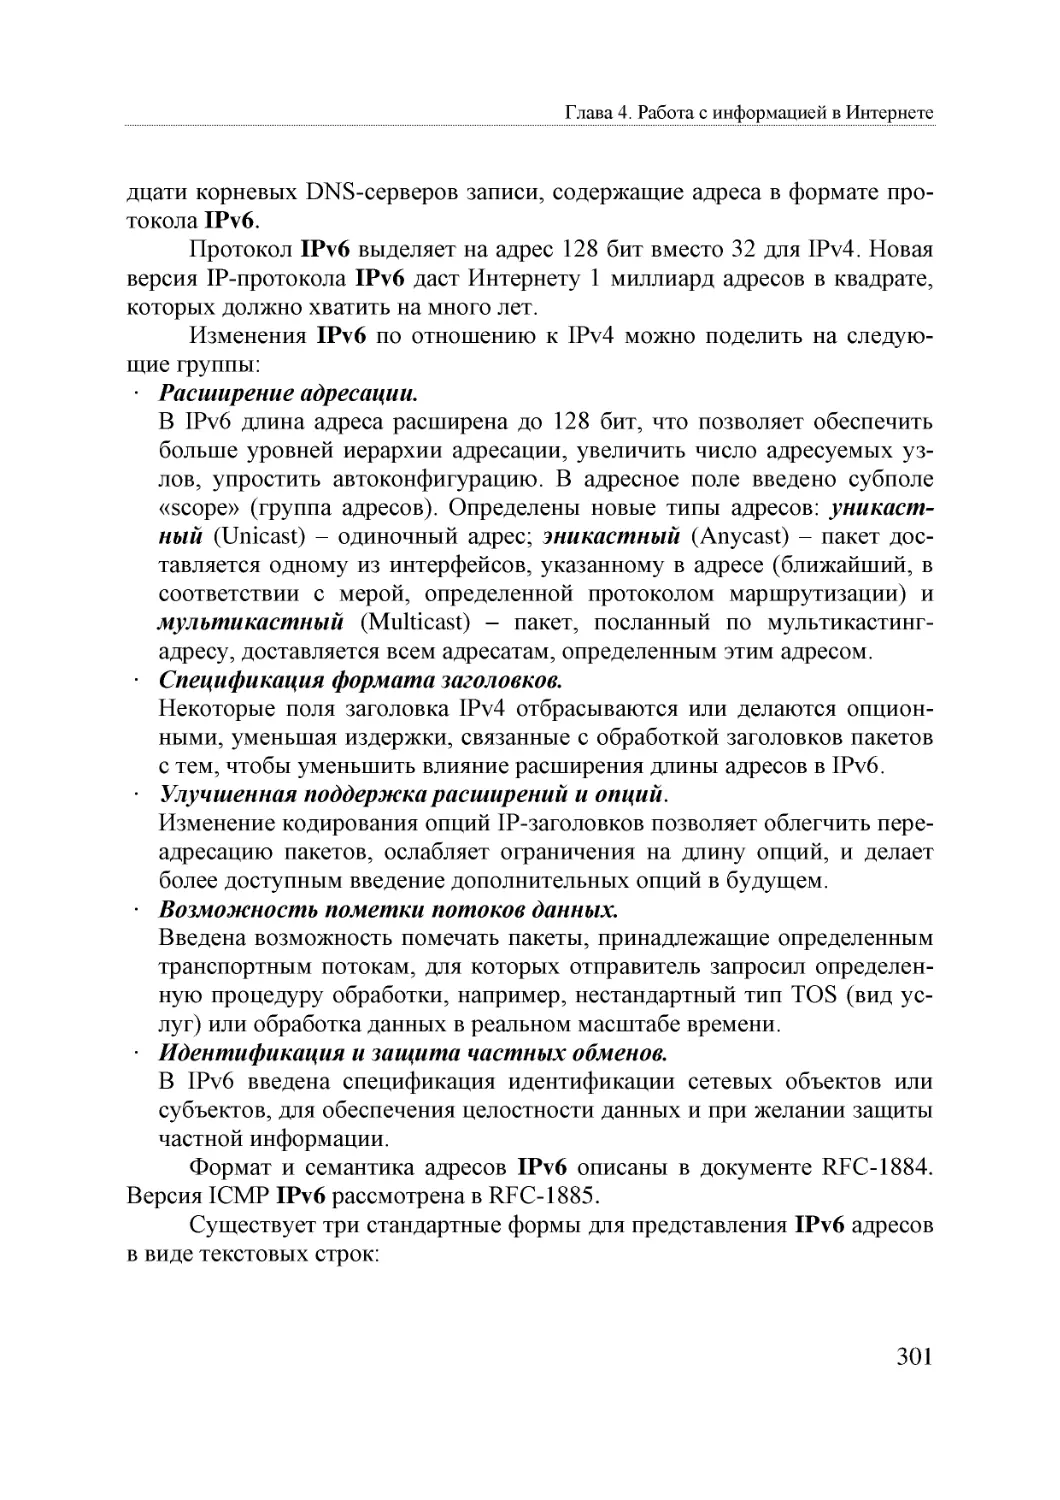 Binder5
Informatika_Uchebnik_dlya_vuzov_2010 301